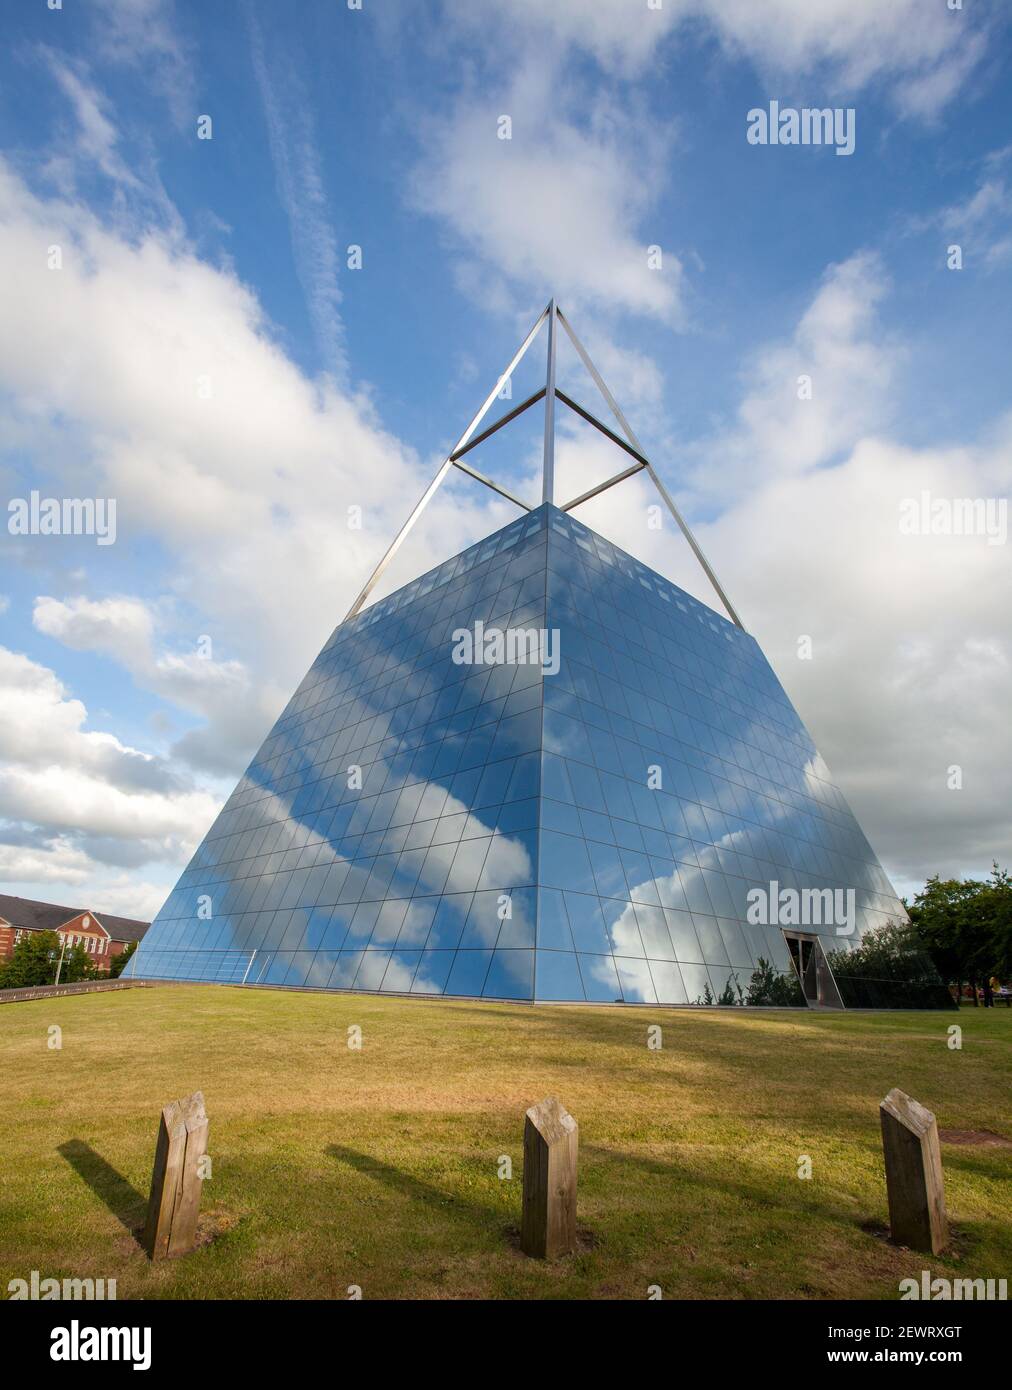 The inspire Pyramid at Hornbeam Park, Harrogate - un bâtiment de bureau en forme de pyramide de verre Banque D'Images